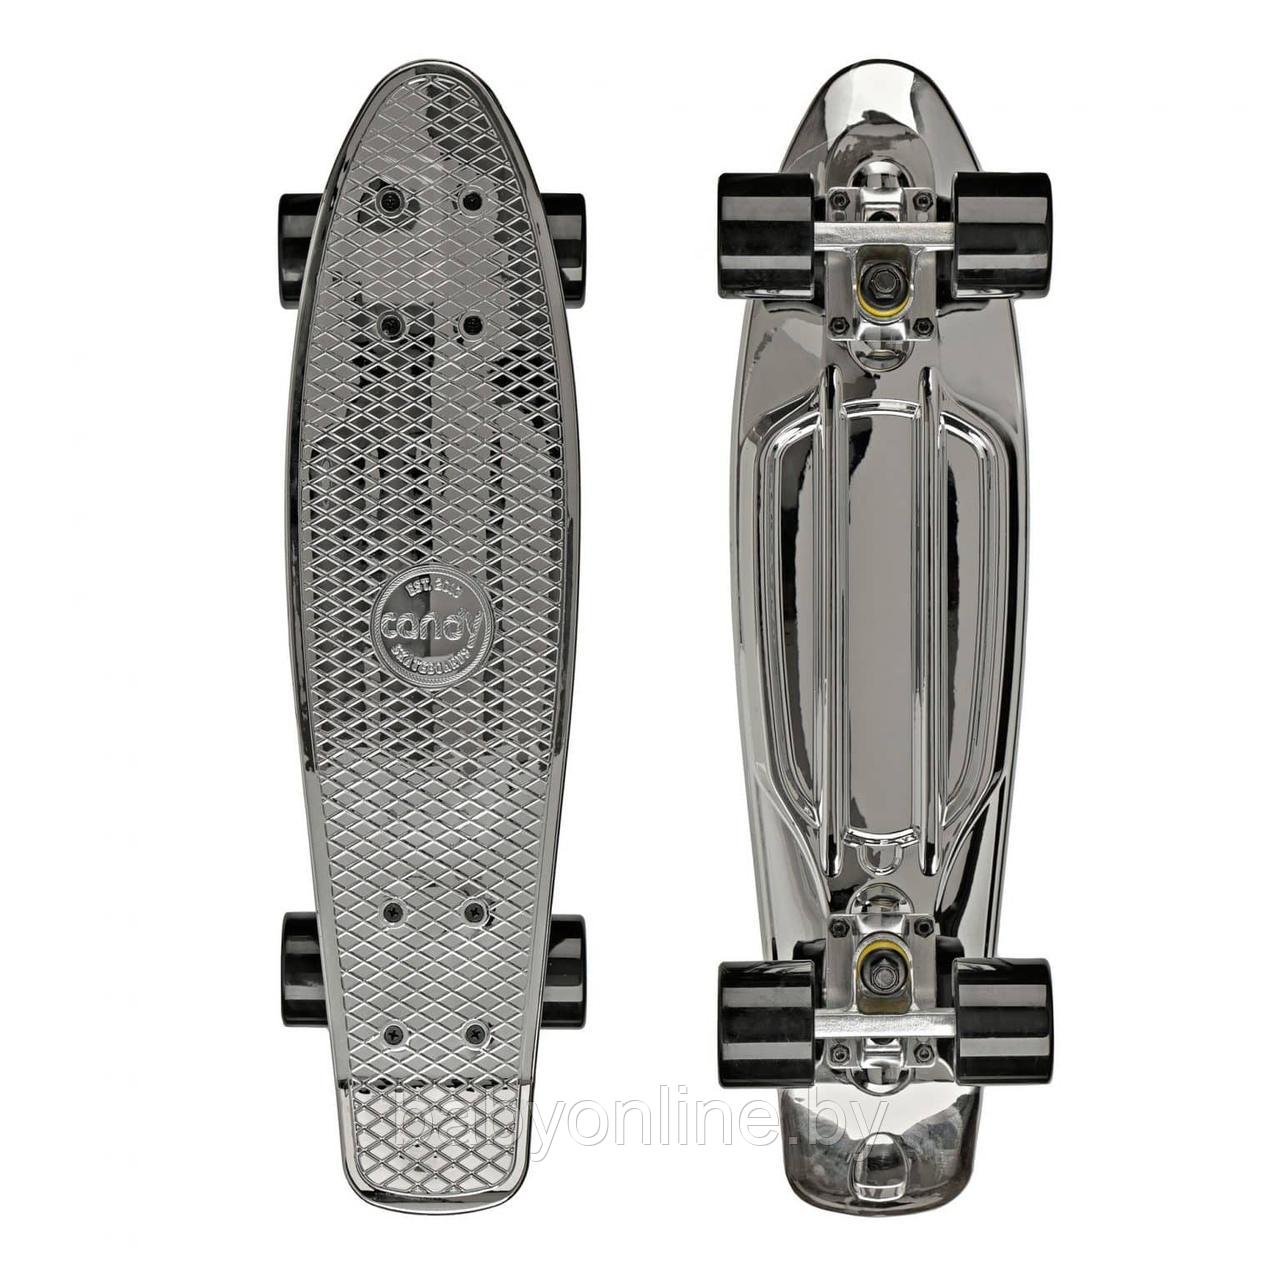 Скейтборд (пенни борд) размер 55см цвет серебро арт 3011S